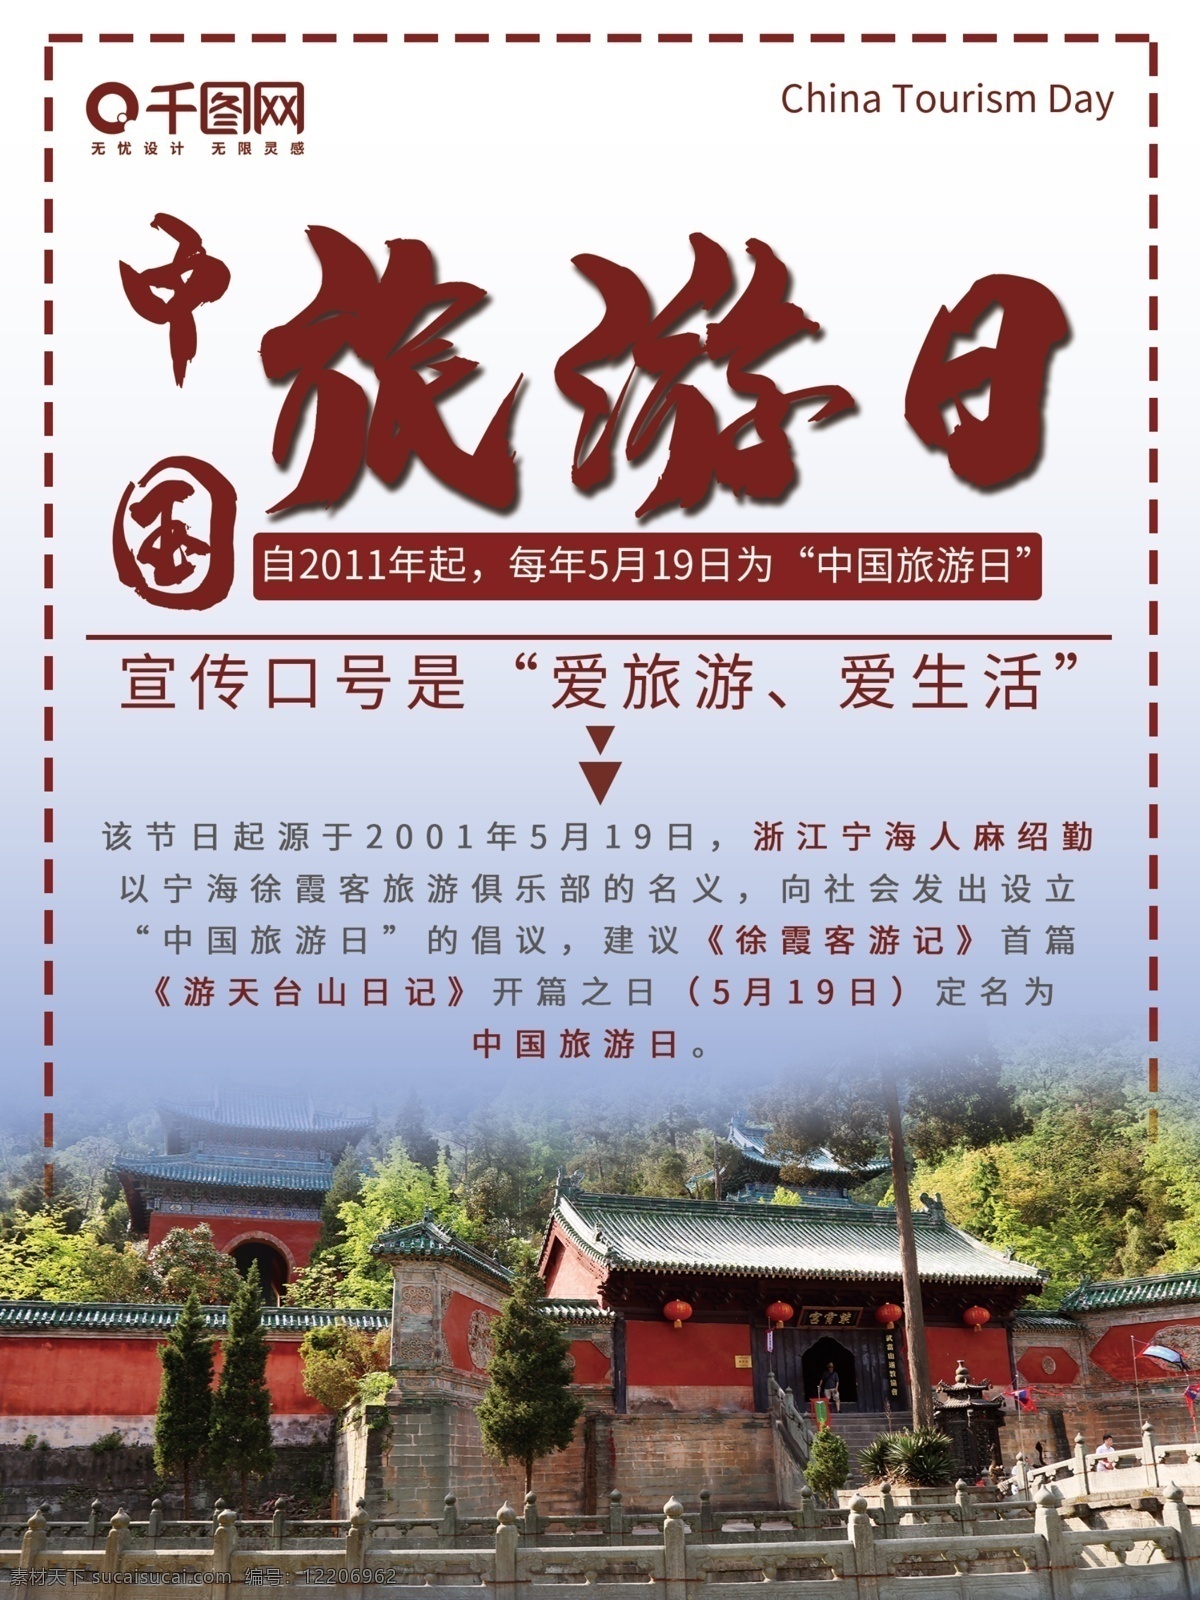 中国旅游 日 海报 宣传海报 旅游日海报 宣传 公益